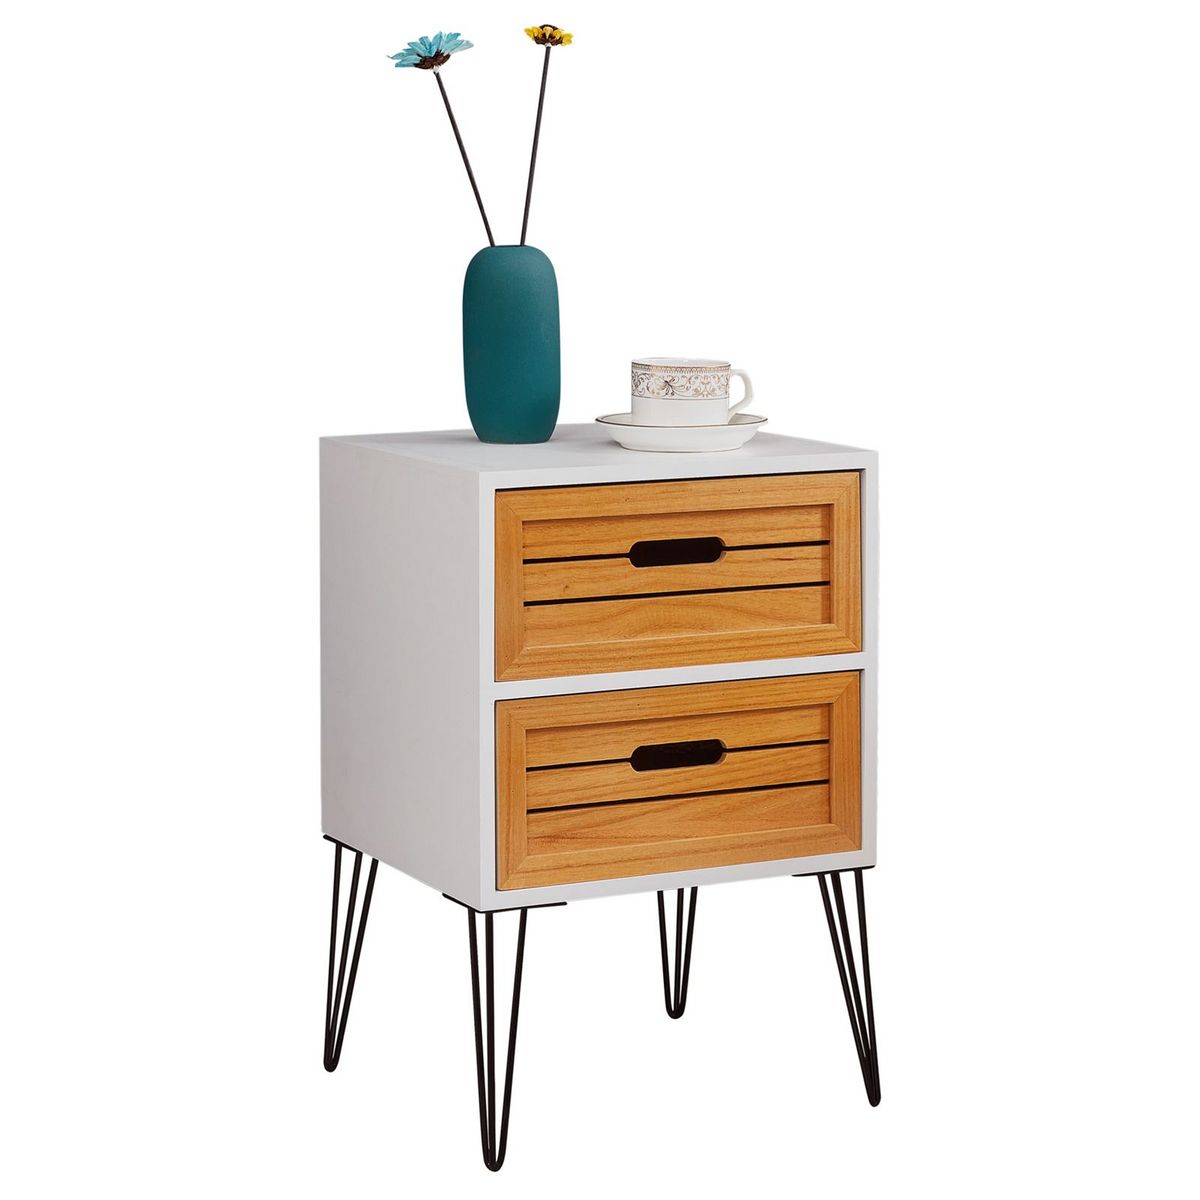 IDIMEX Table de chevet ESTORIL meuble de nuit avec 2 tiroirs de coloris blanc et bois naturel avec pieds épingle en métal noir